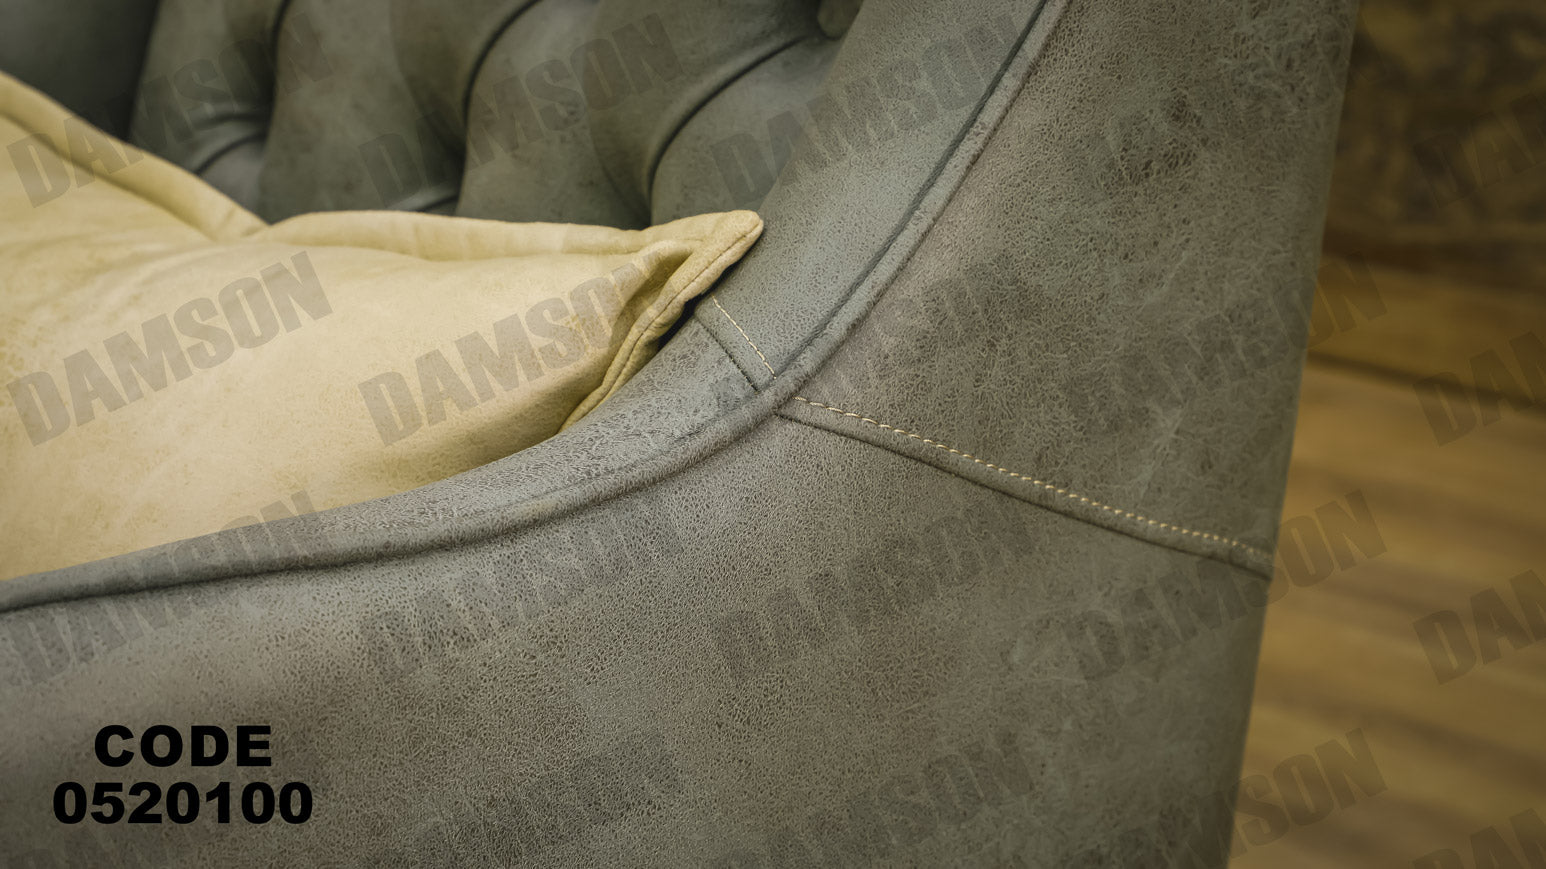 انترية 201 - Damson Furnitureانترية 201